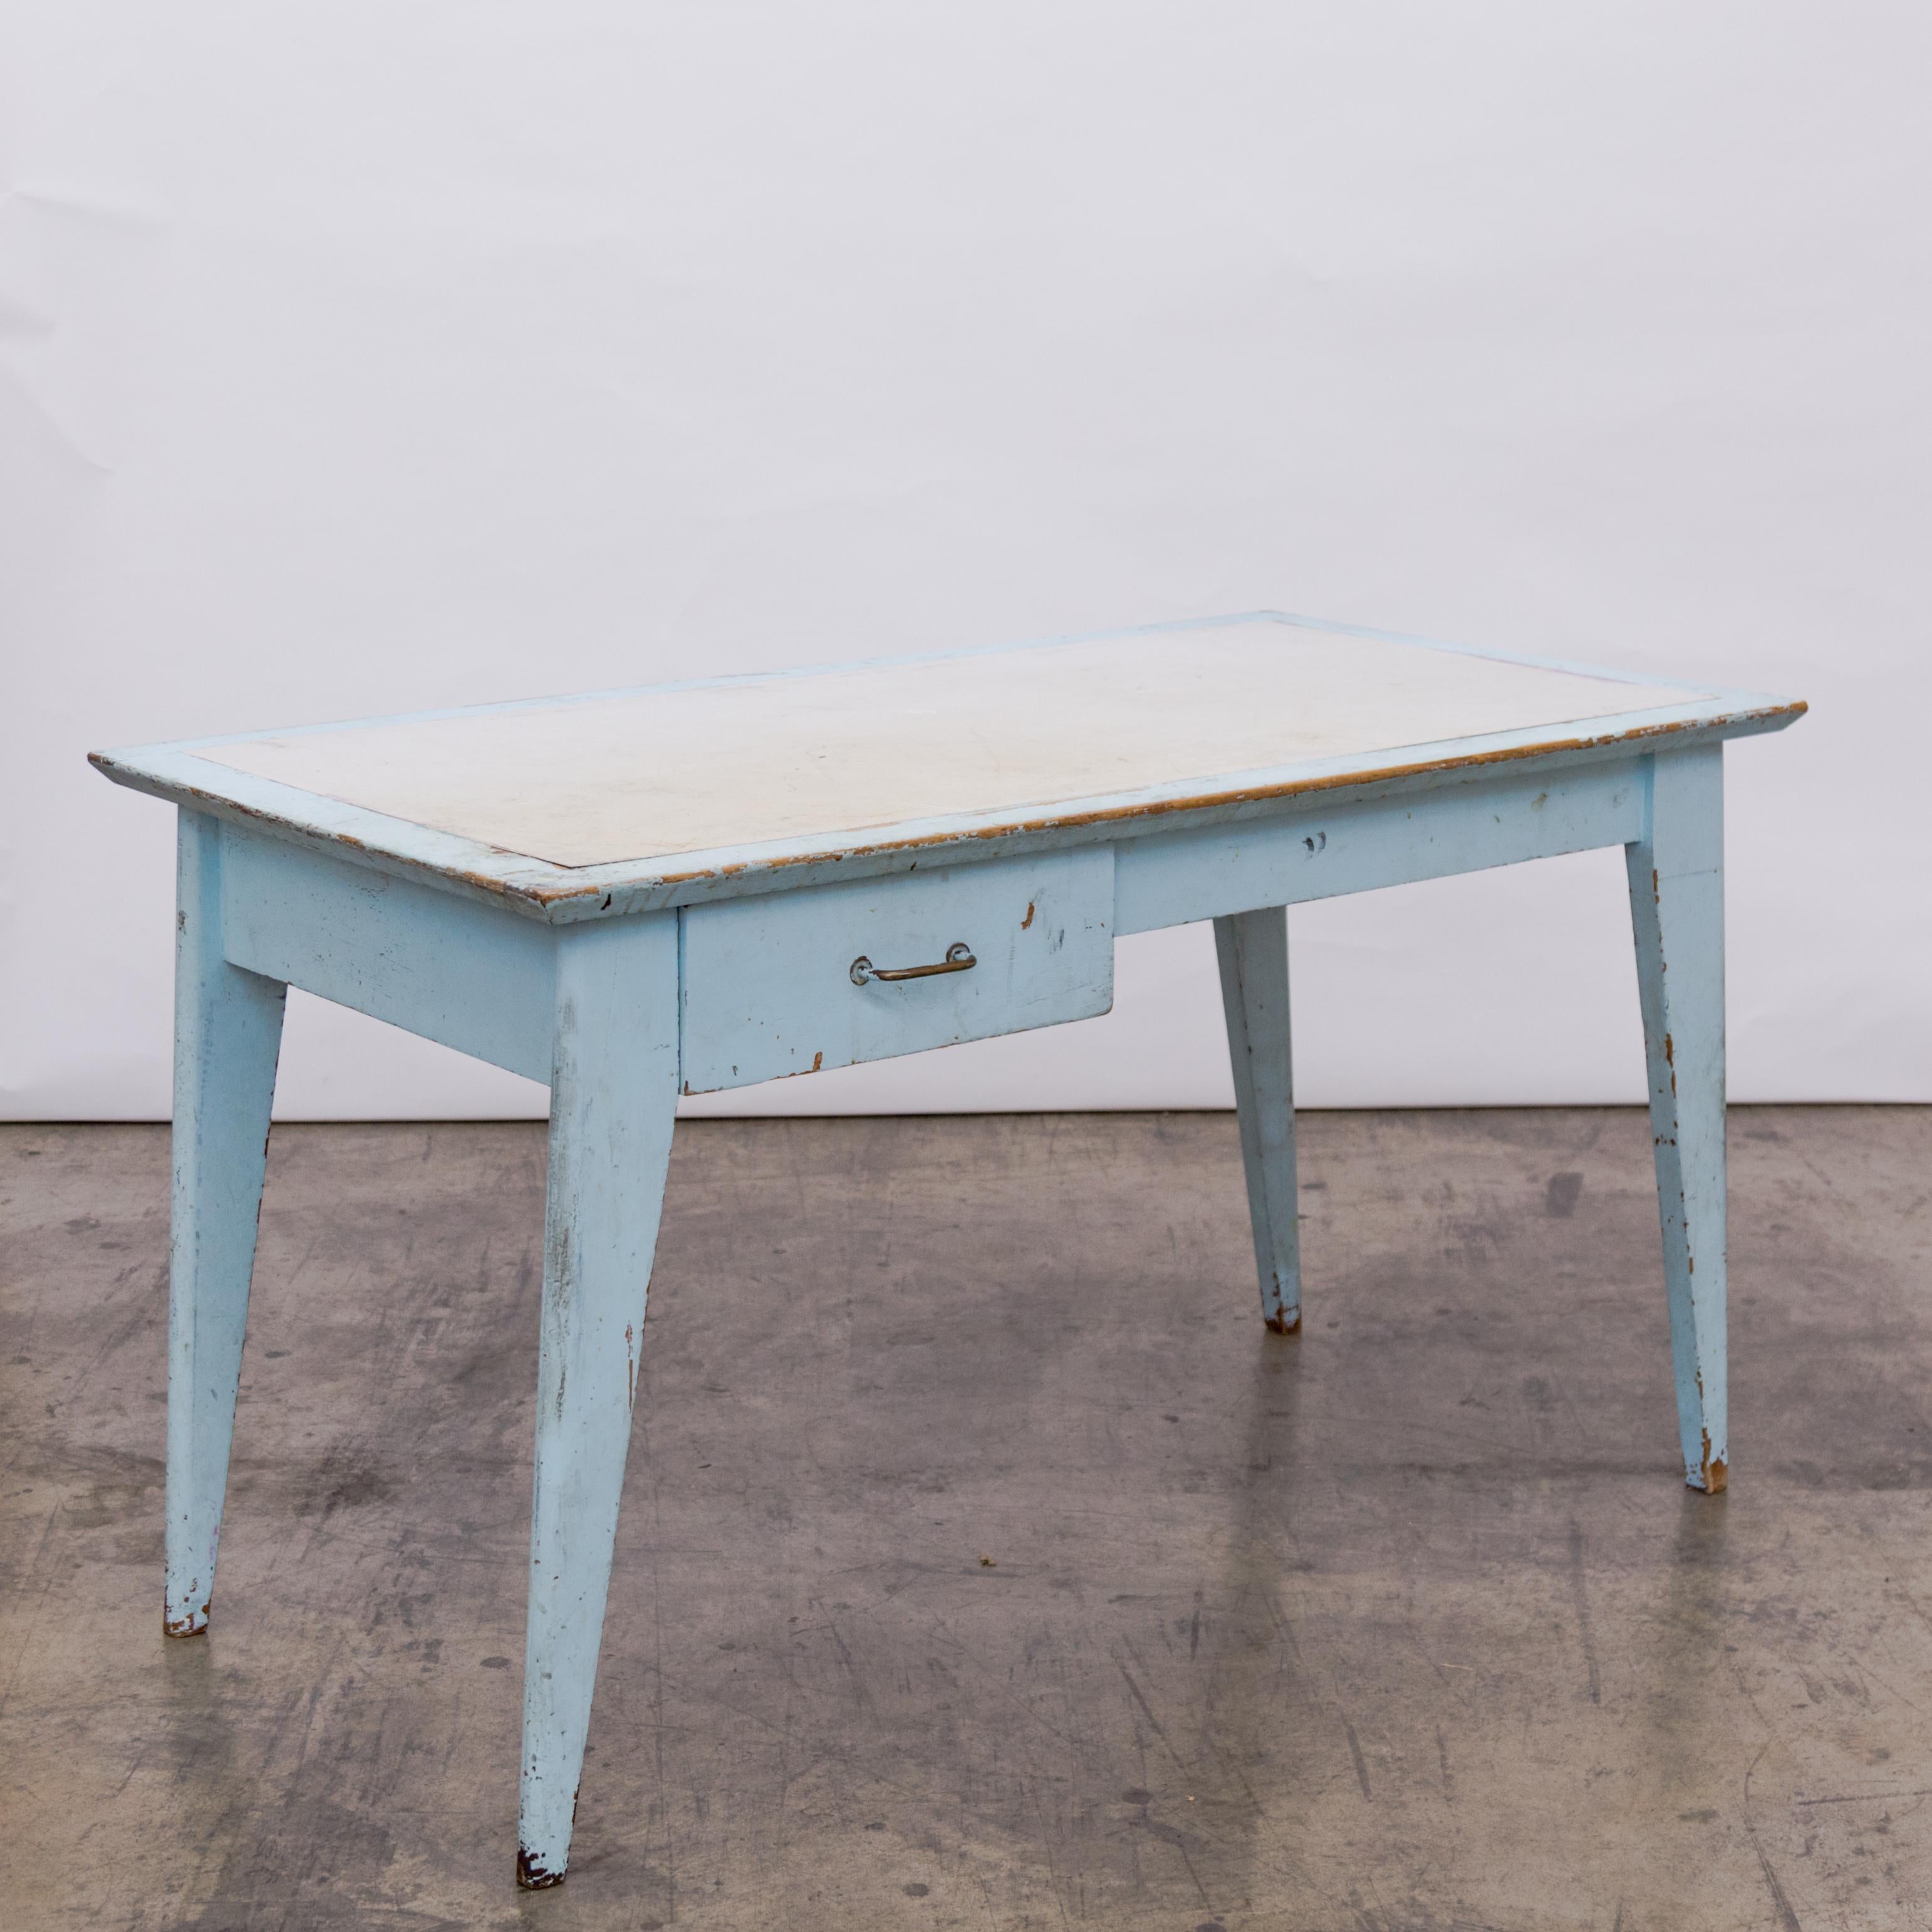 Dans le style de Jean Prouve, un bureau d'étudiant bleu coquille d'oeuf patiné avec un seul tiroir et un plateau en stratifié blanc inséré, provenant des dortoirs de la Résidence Universitaire Jean Zay, France, vers les années 1950.